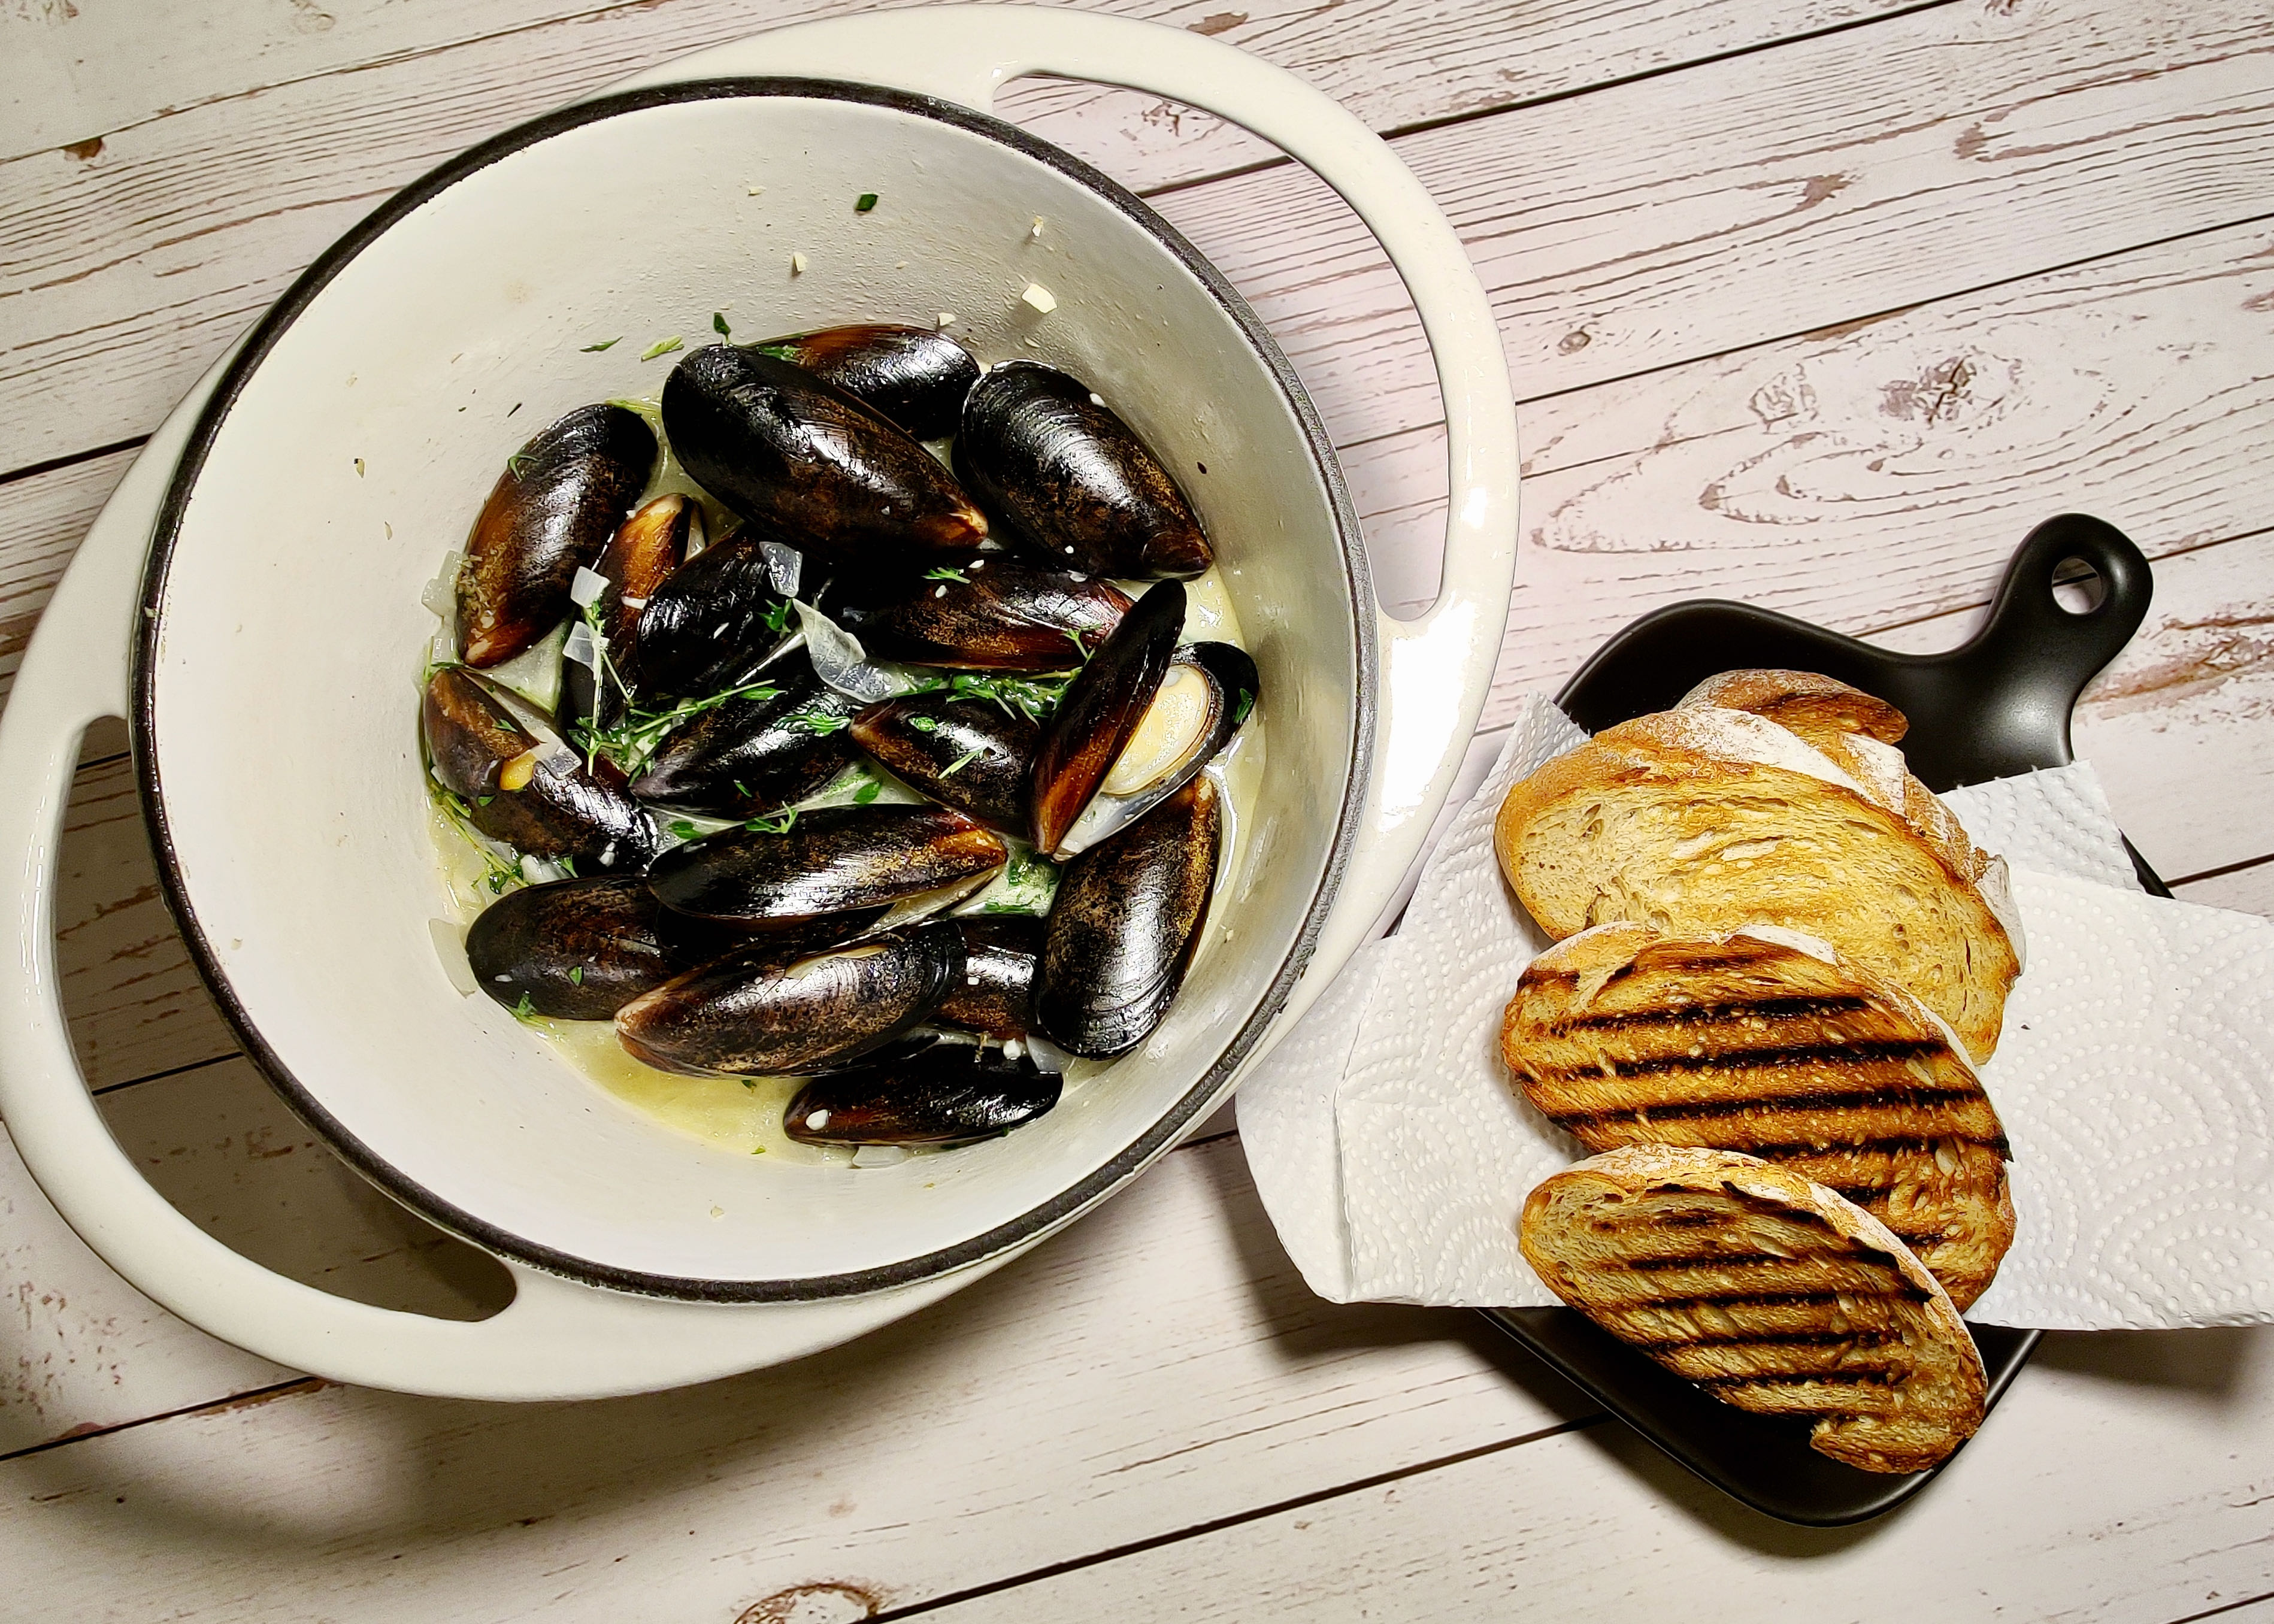 Belgian style mussels